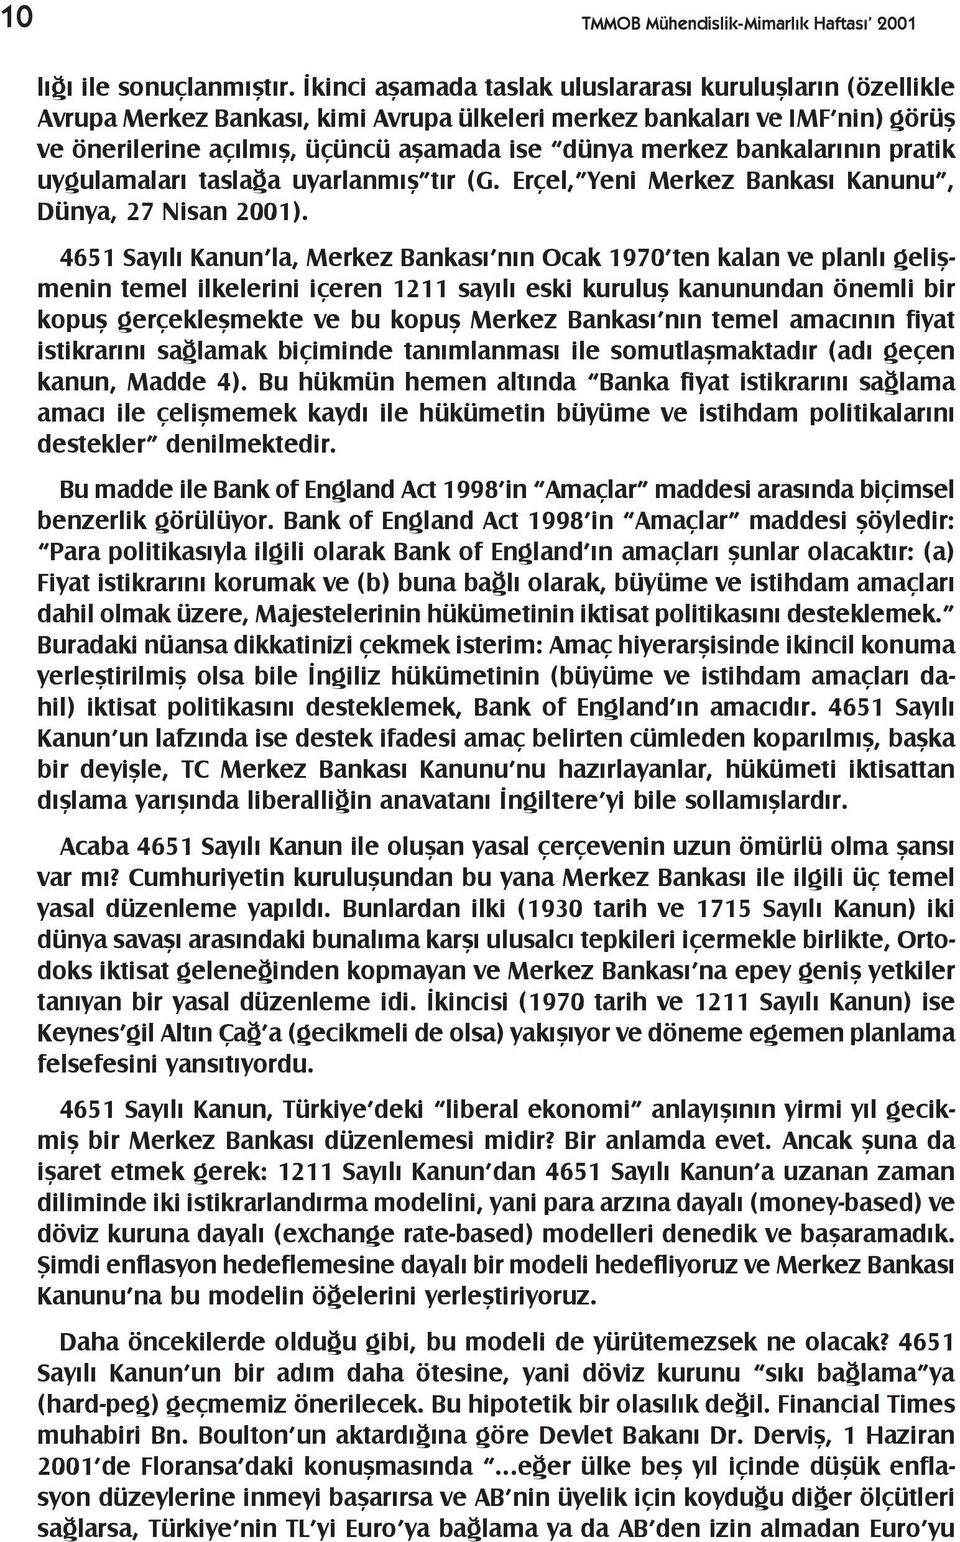 bankalarýnýn pratik uygulamalarý taslaða uyarlanmýþ týr (G. Erçel, Yeni Merkez Bankasý Kanunu, Dünya, 27 Nisan 2001).